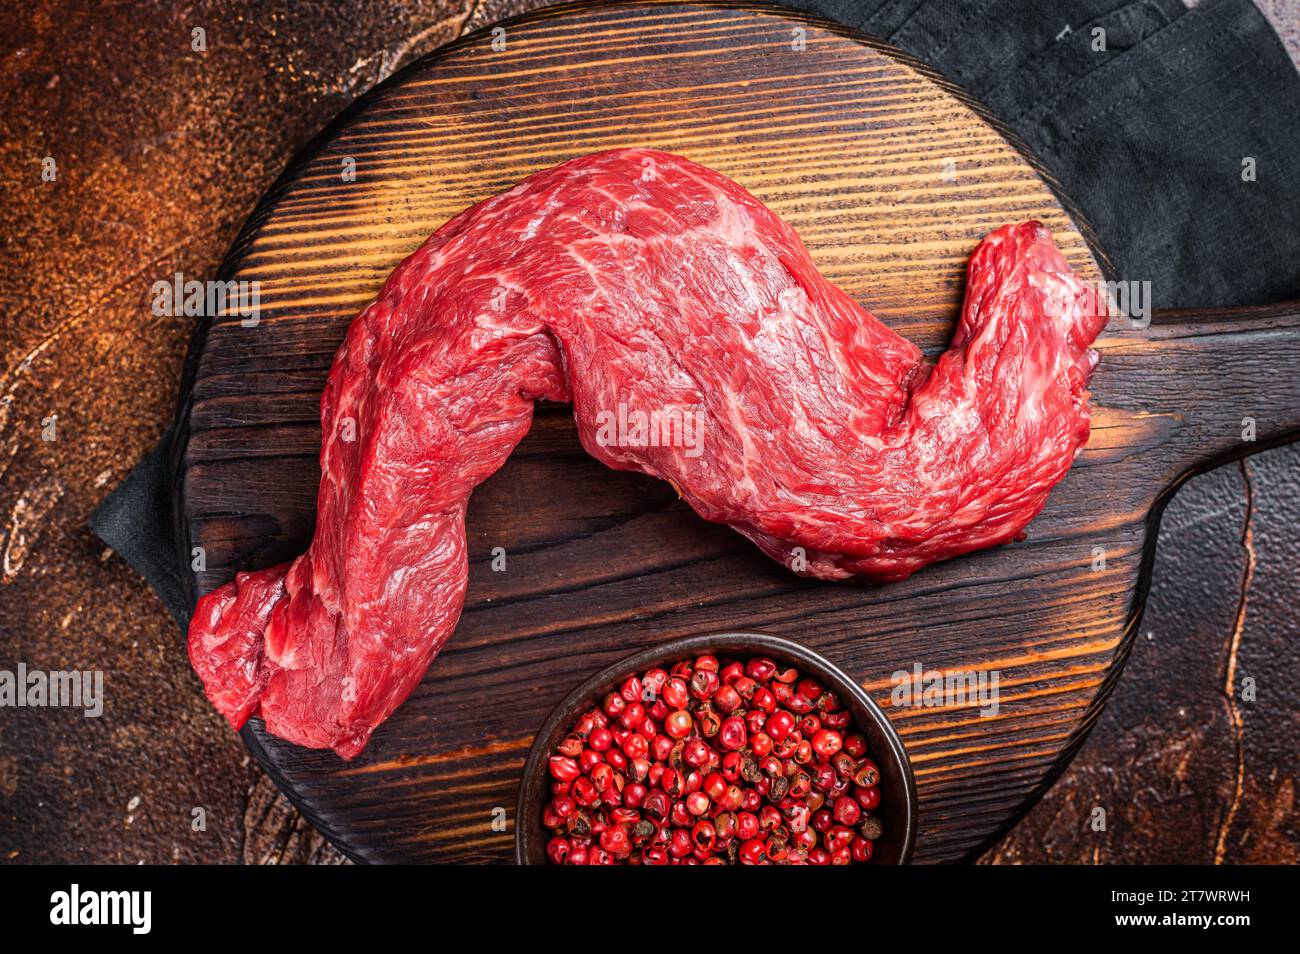 Steak de viande de bœuf à la machette de la jupe crue sur une planche de bois. Arrière-plan sombre. Vue de dessus. Banque D'Images